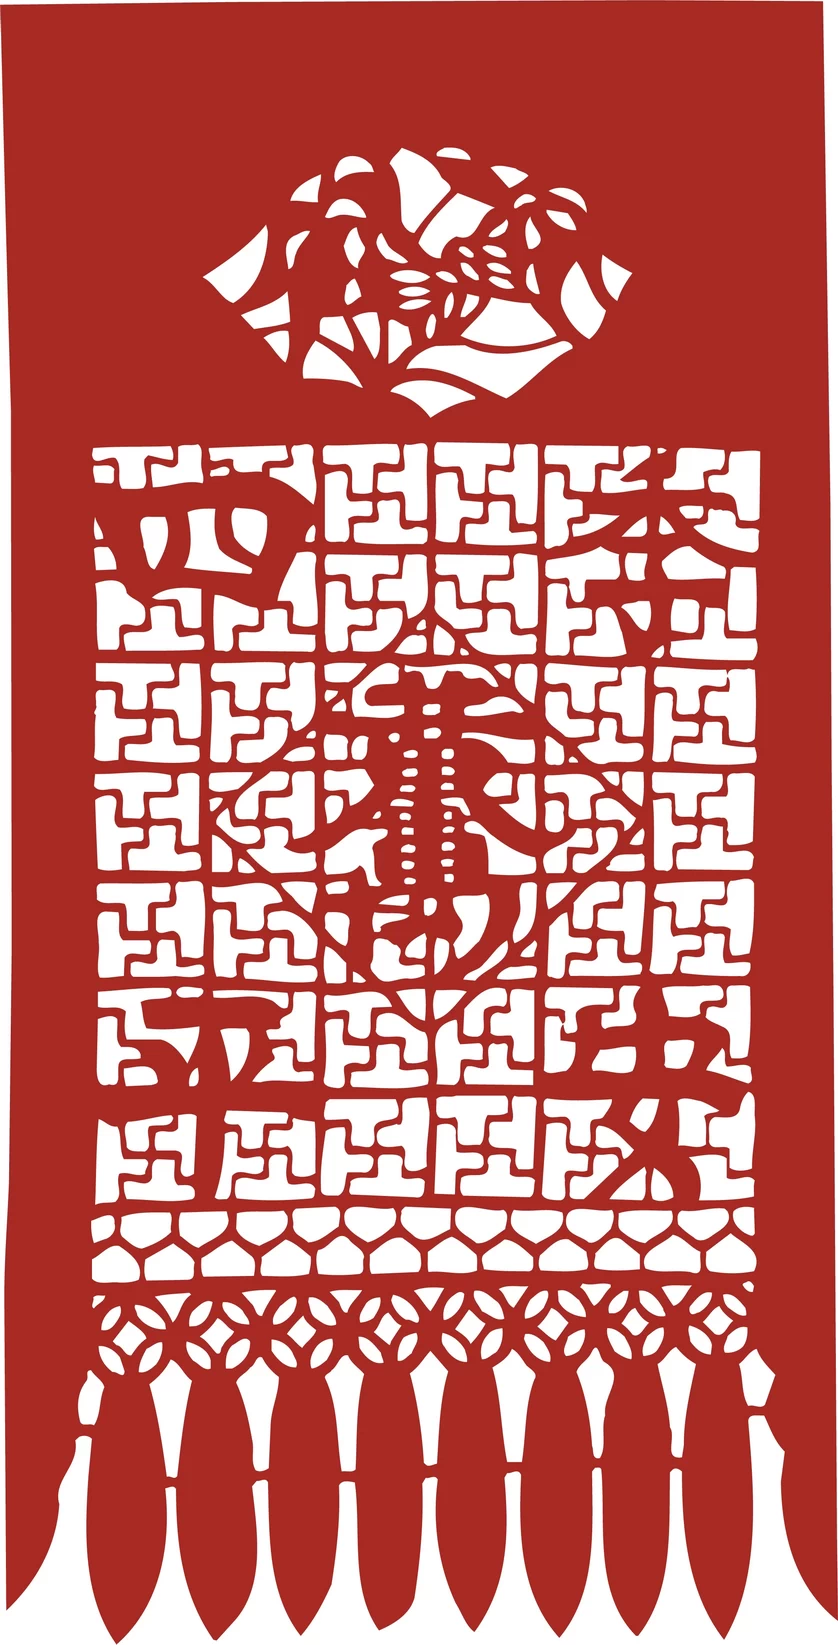 中国风中式传统喜庆民俗人物动物窗花剪纸插画边框AI矢量PNG素材【1999】